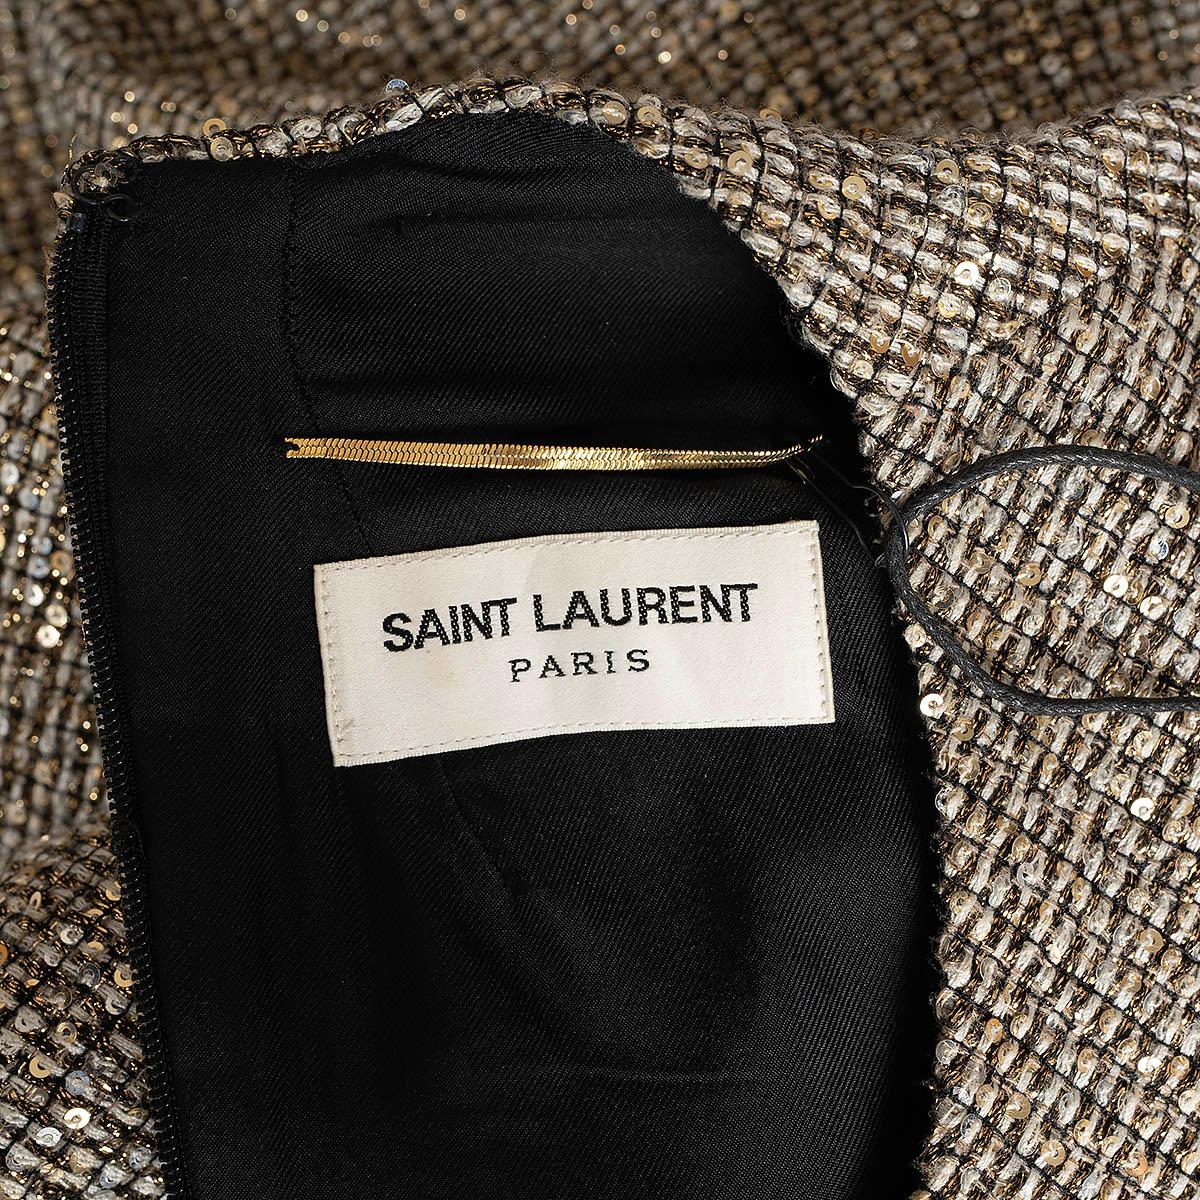 SAINT LAURENT gold 2013 SEQUIN & LUREX TWEED Shift Dress 38 S 3